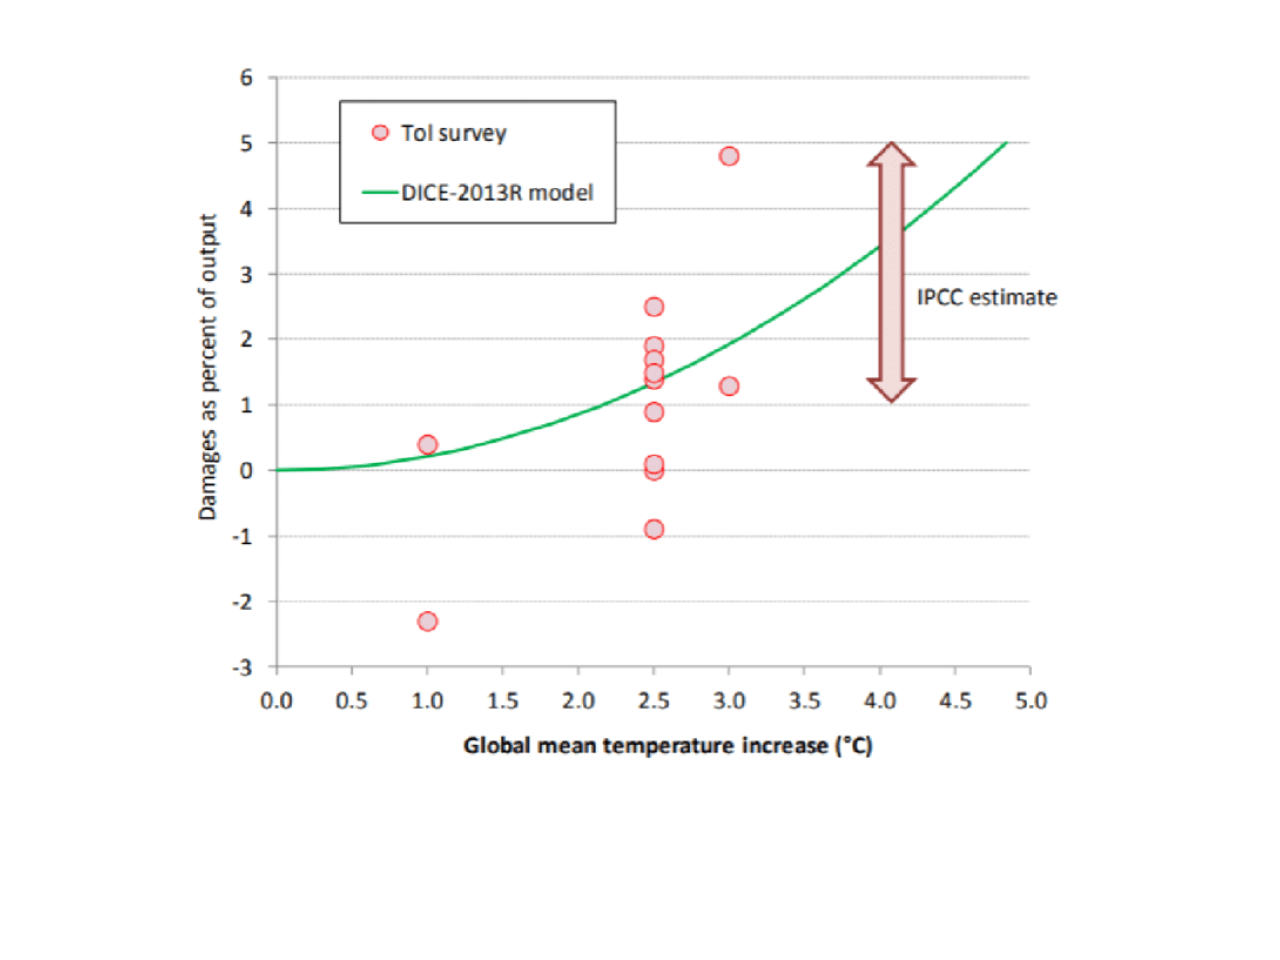 Nordhaus & Sztorc, Global mean temperature increase